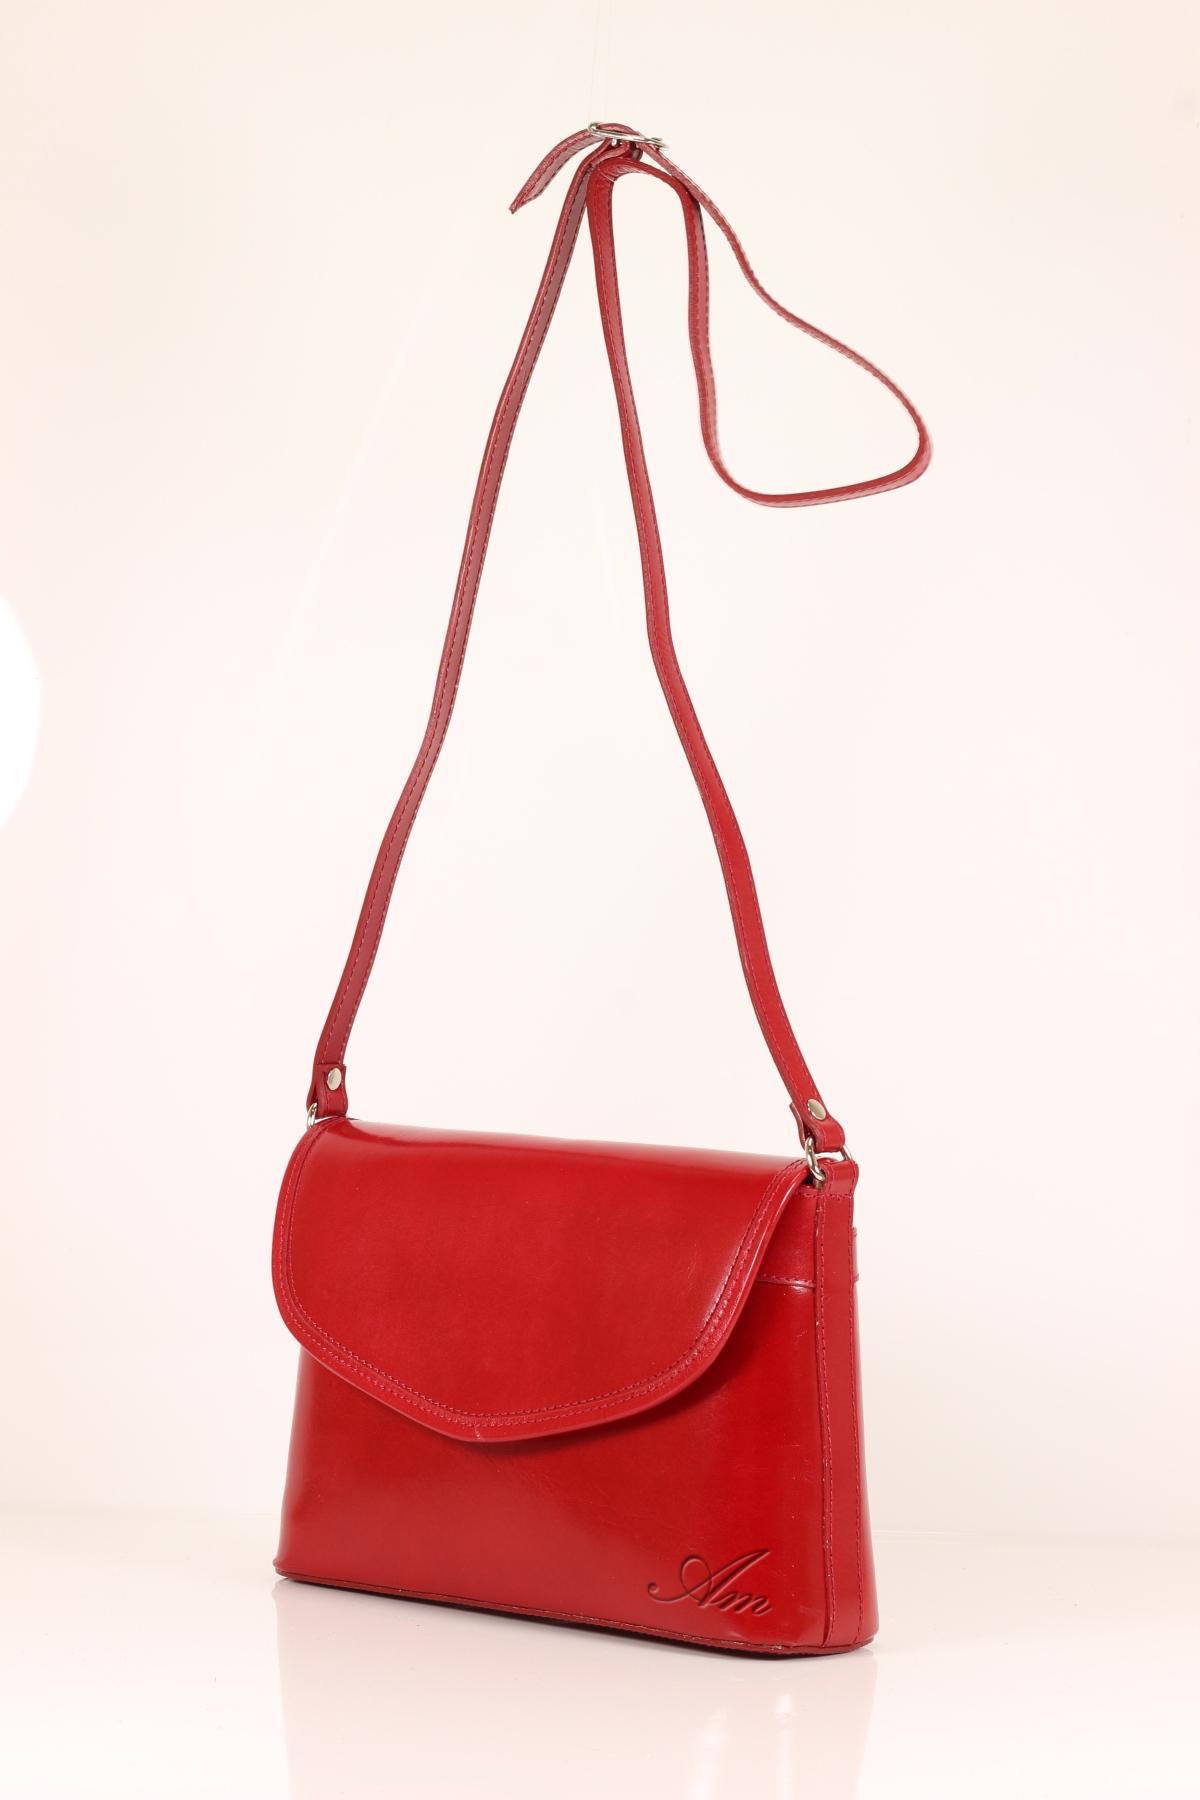 Alti Mora top luxury women handbag : Scarlett